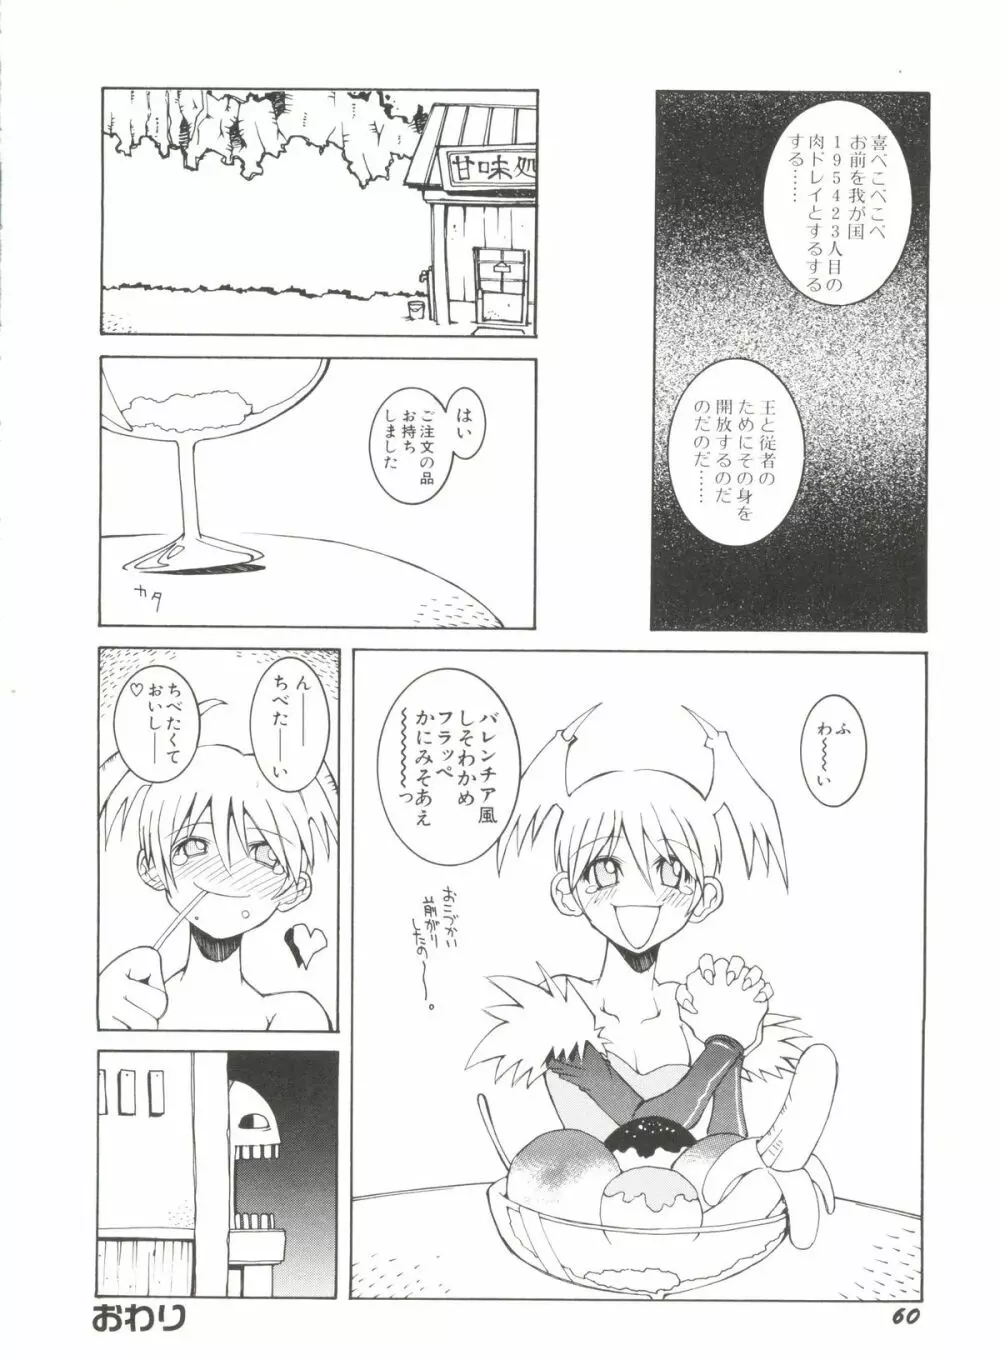 Denei Tamate Bako Bishoujo Doujinshi Anthology Vol. 2 – Nishinhou no Tenshi 64ページ